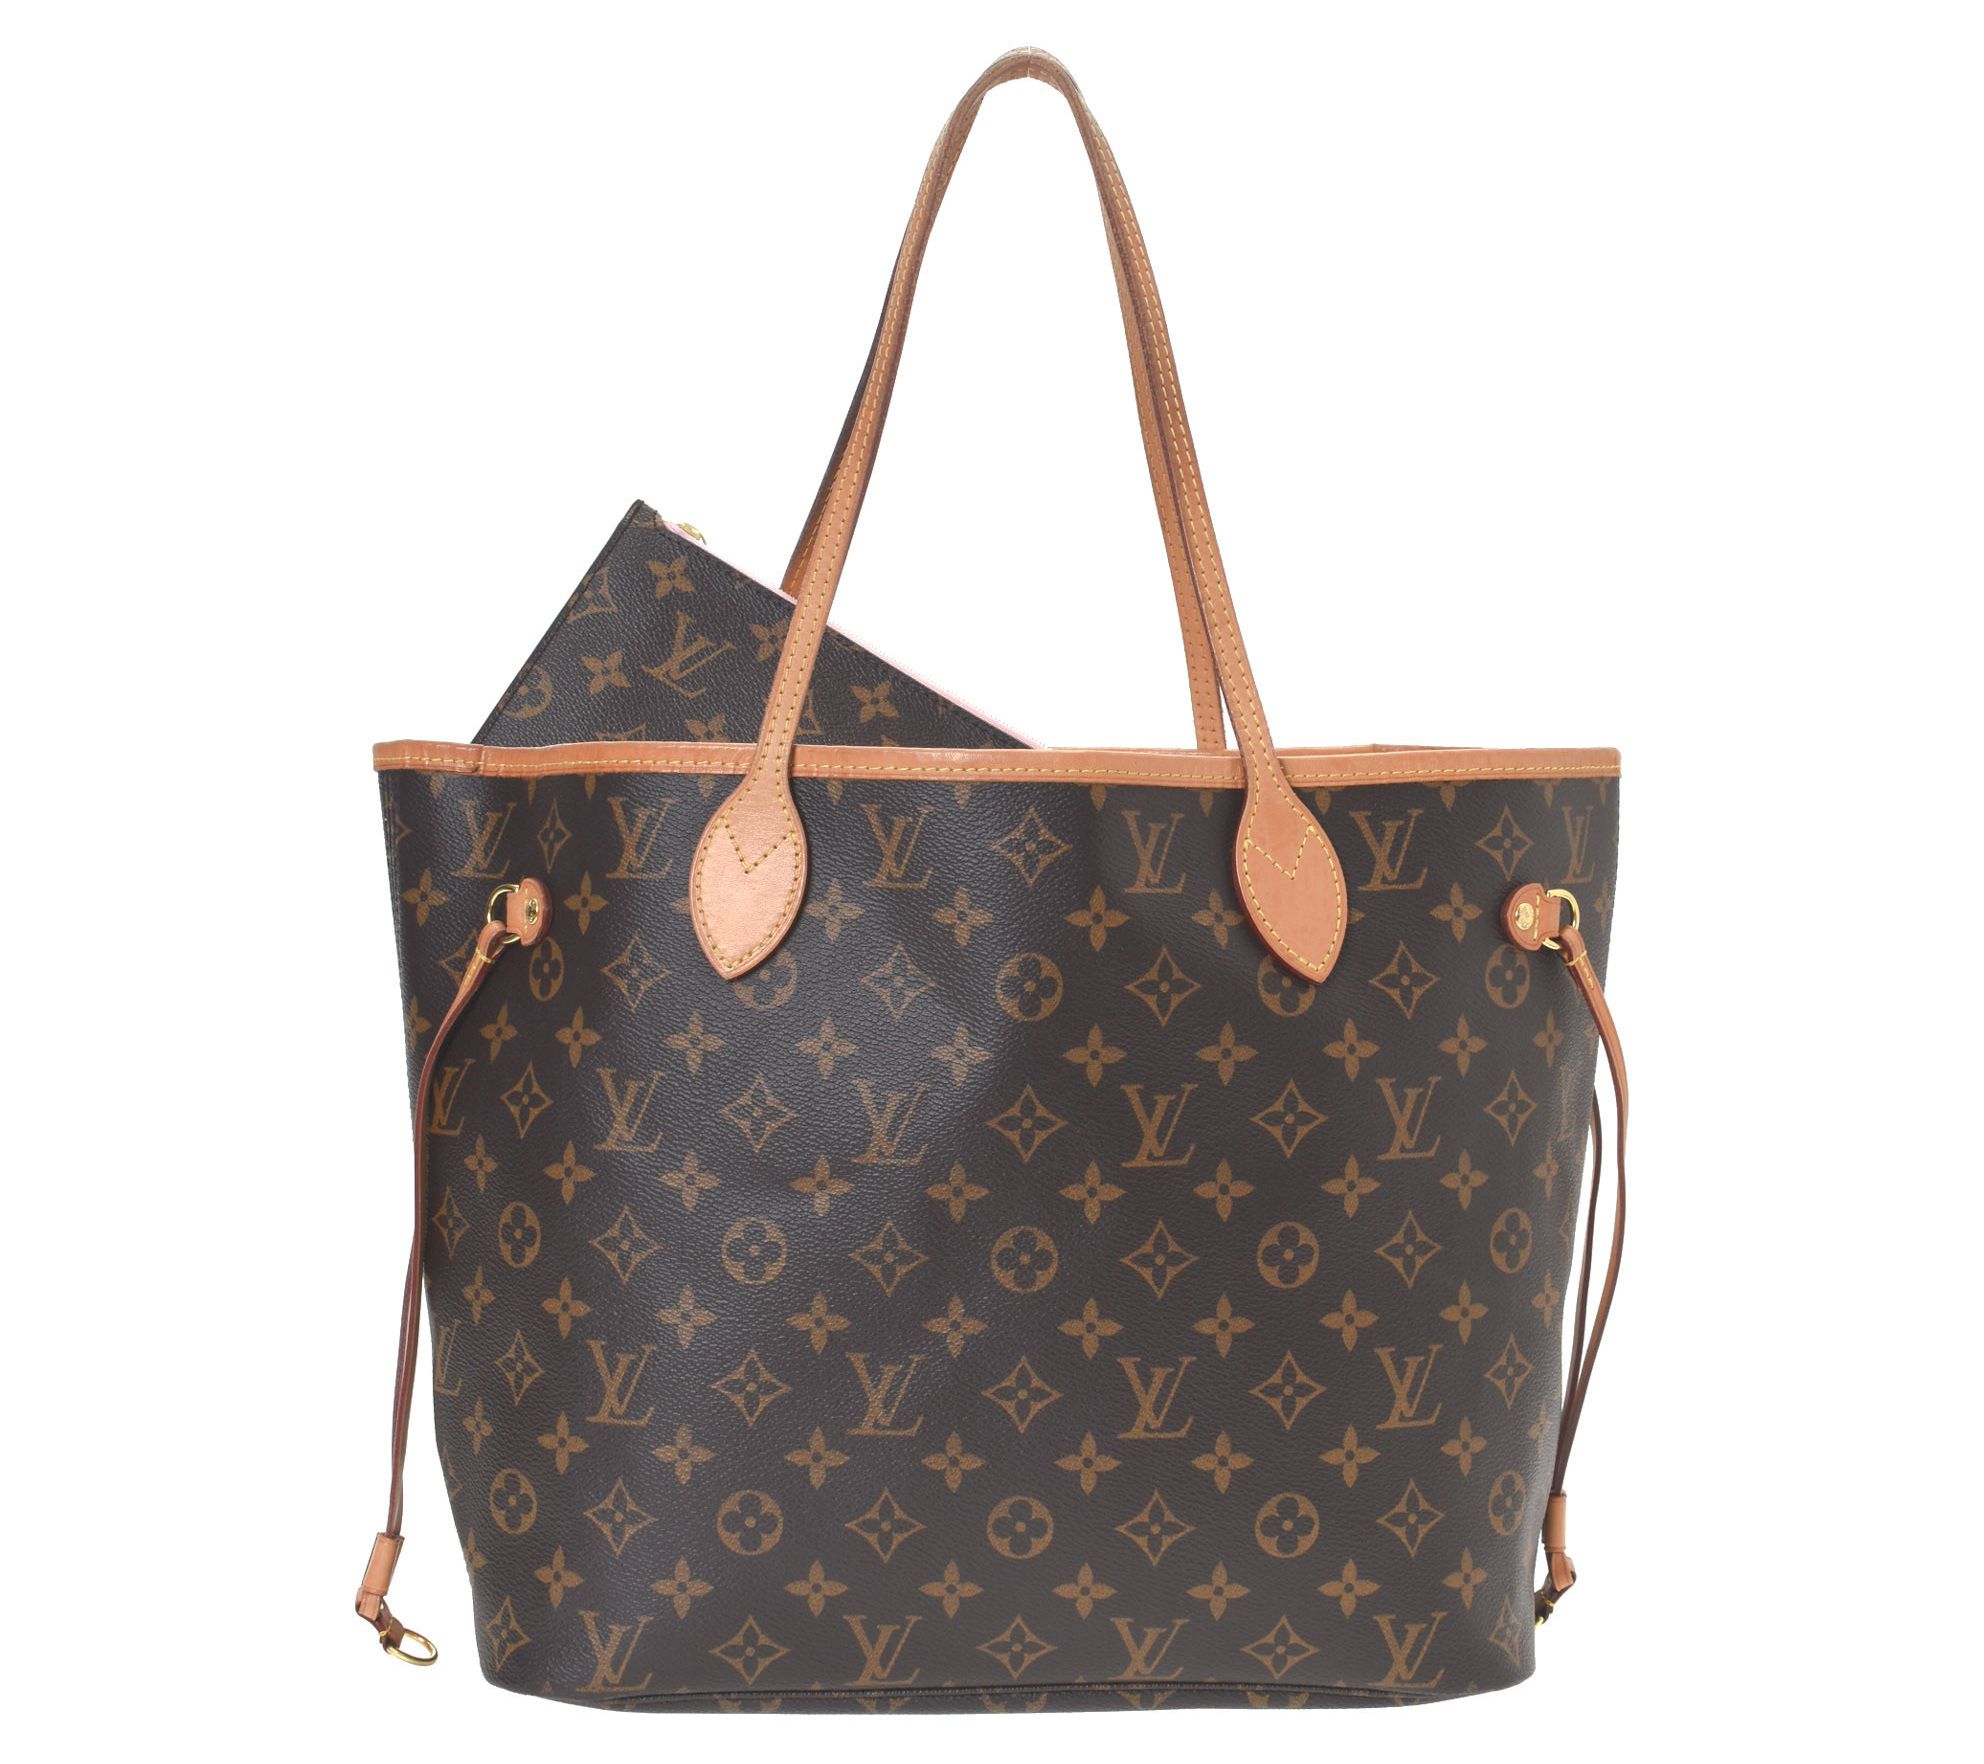 Second Hand Louis Vuitton Neverfull Bag